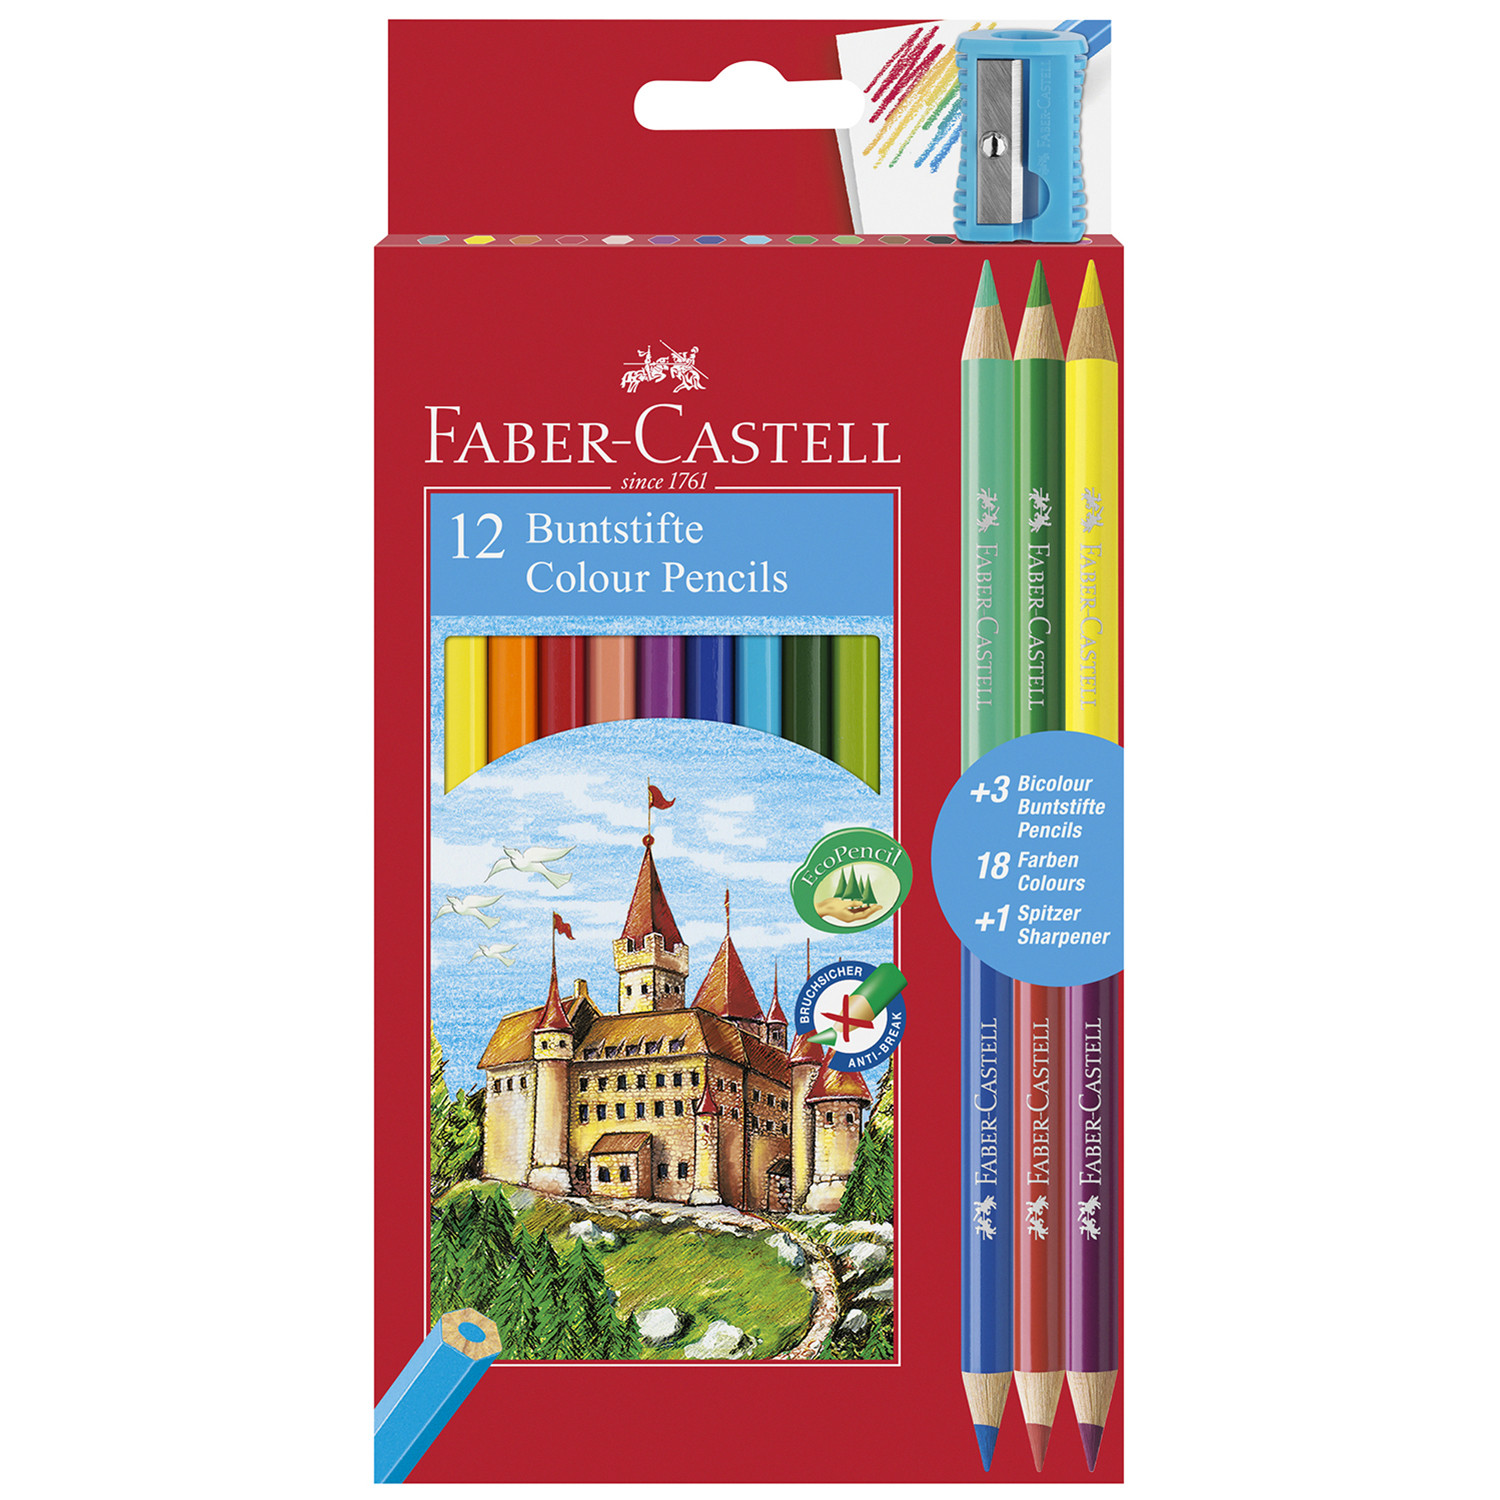 Faber-Castell Buntstifte Colour Pencils 12 Pack Image